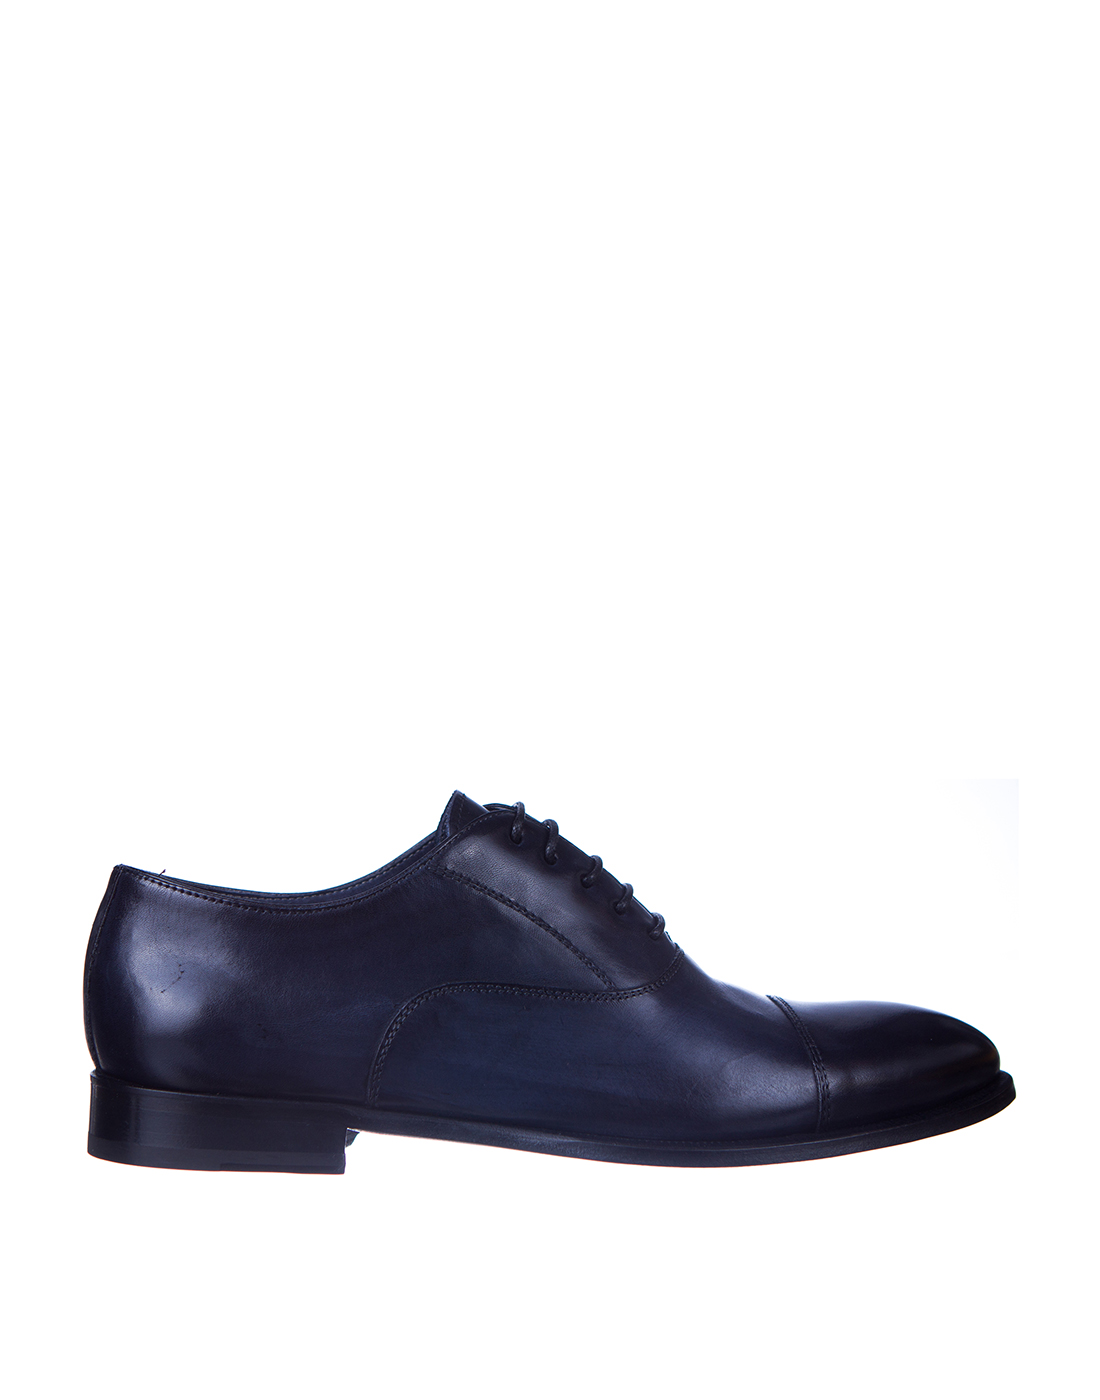 Туфли темно-синие мужские Brecos S10509 BLUE-1